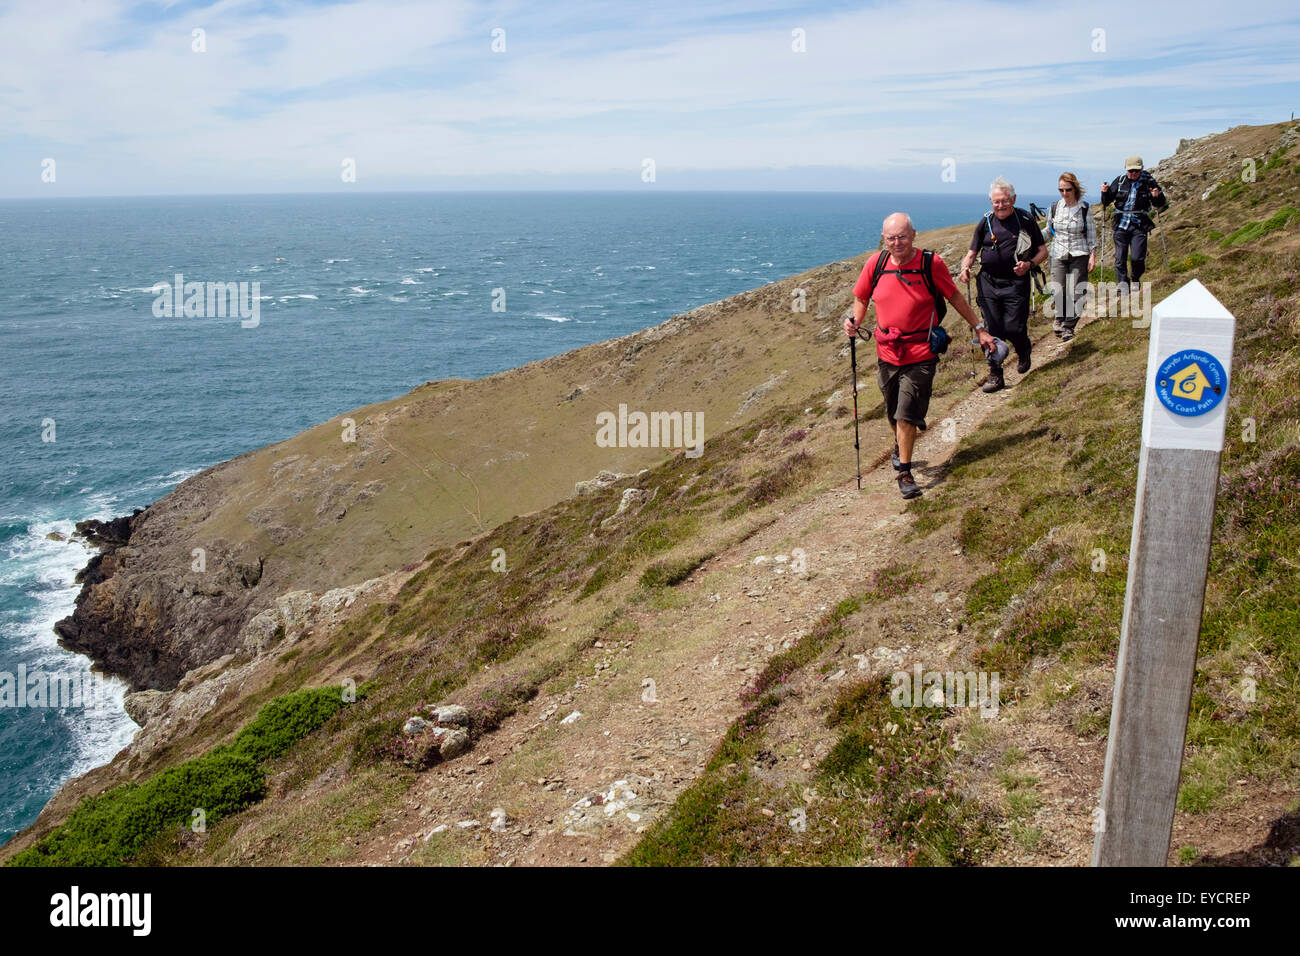 Sentiero segno ed escursionisti a piedi sul ripido sezione ristretta del Wales coast path da Mynydd Mawr Lleyn Peninsula / Pen Llyn. Gwynedd Wales UK Foto Stock